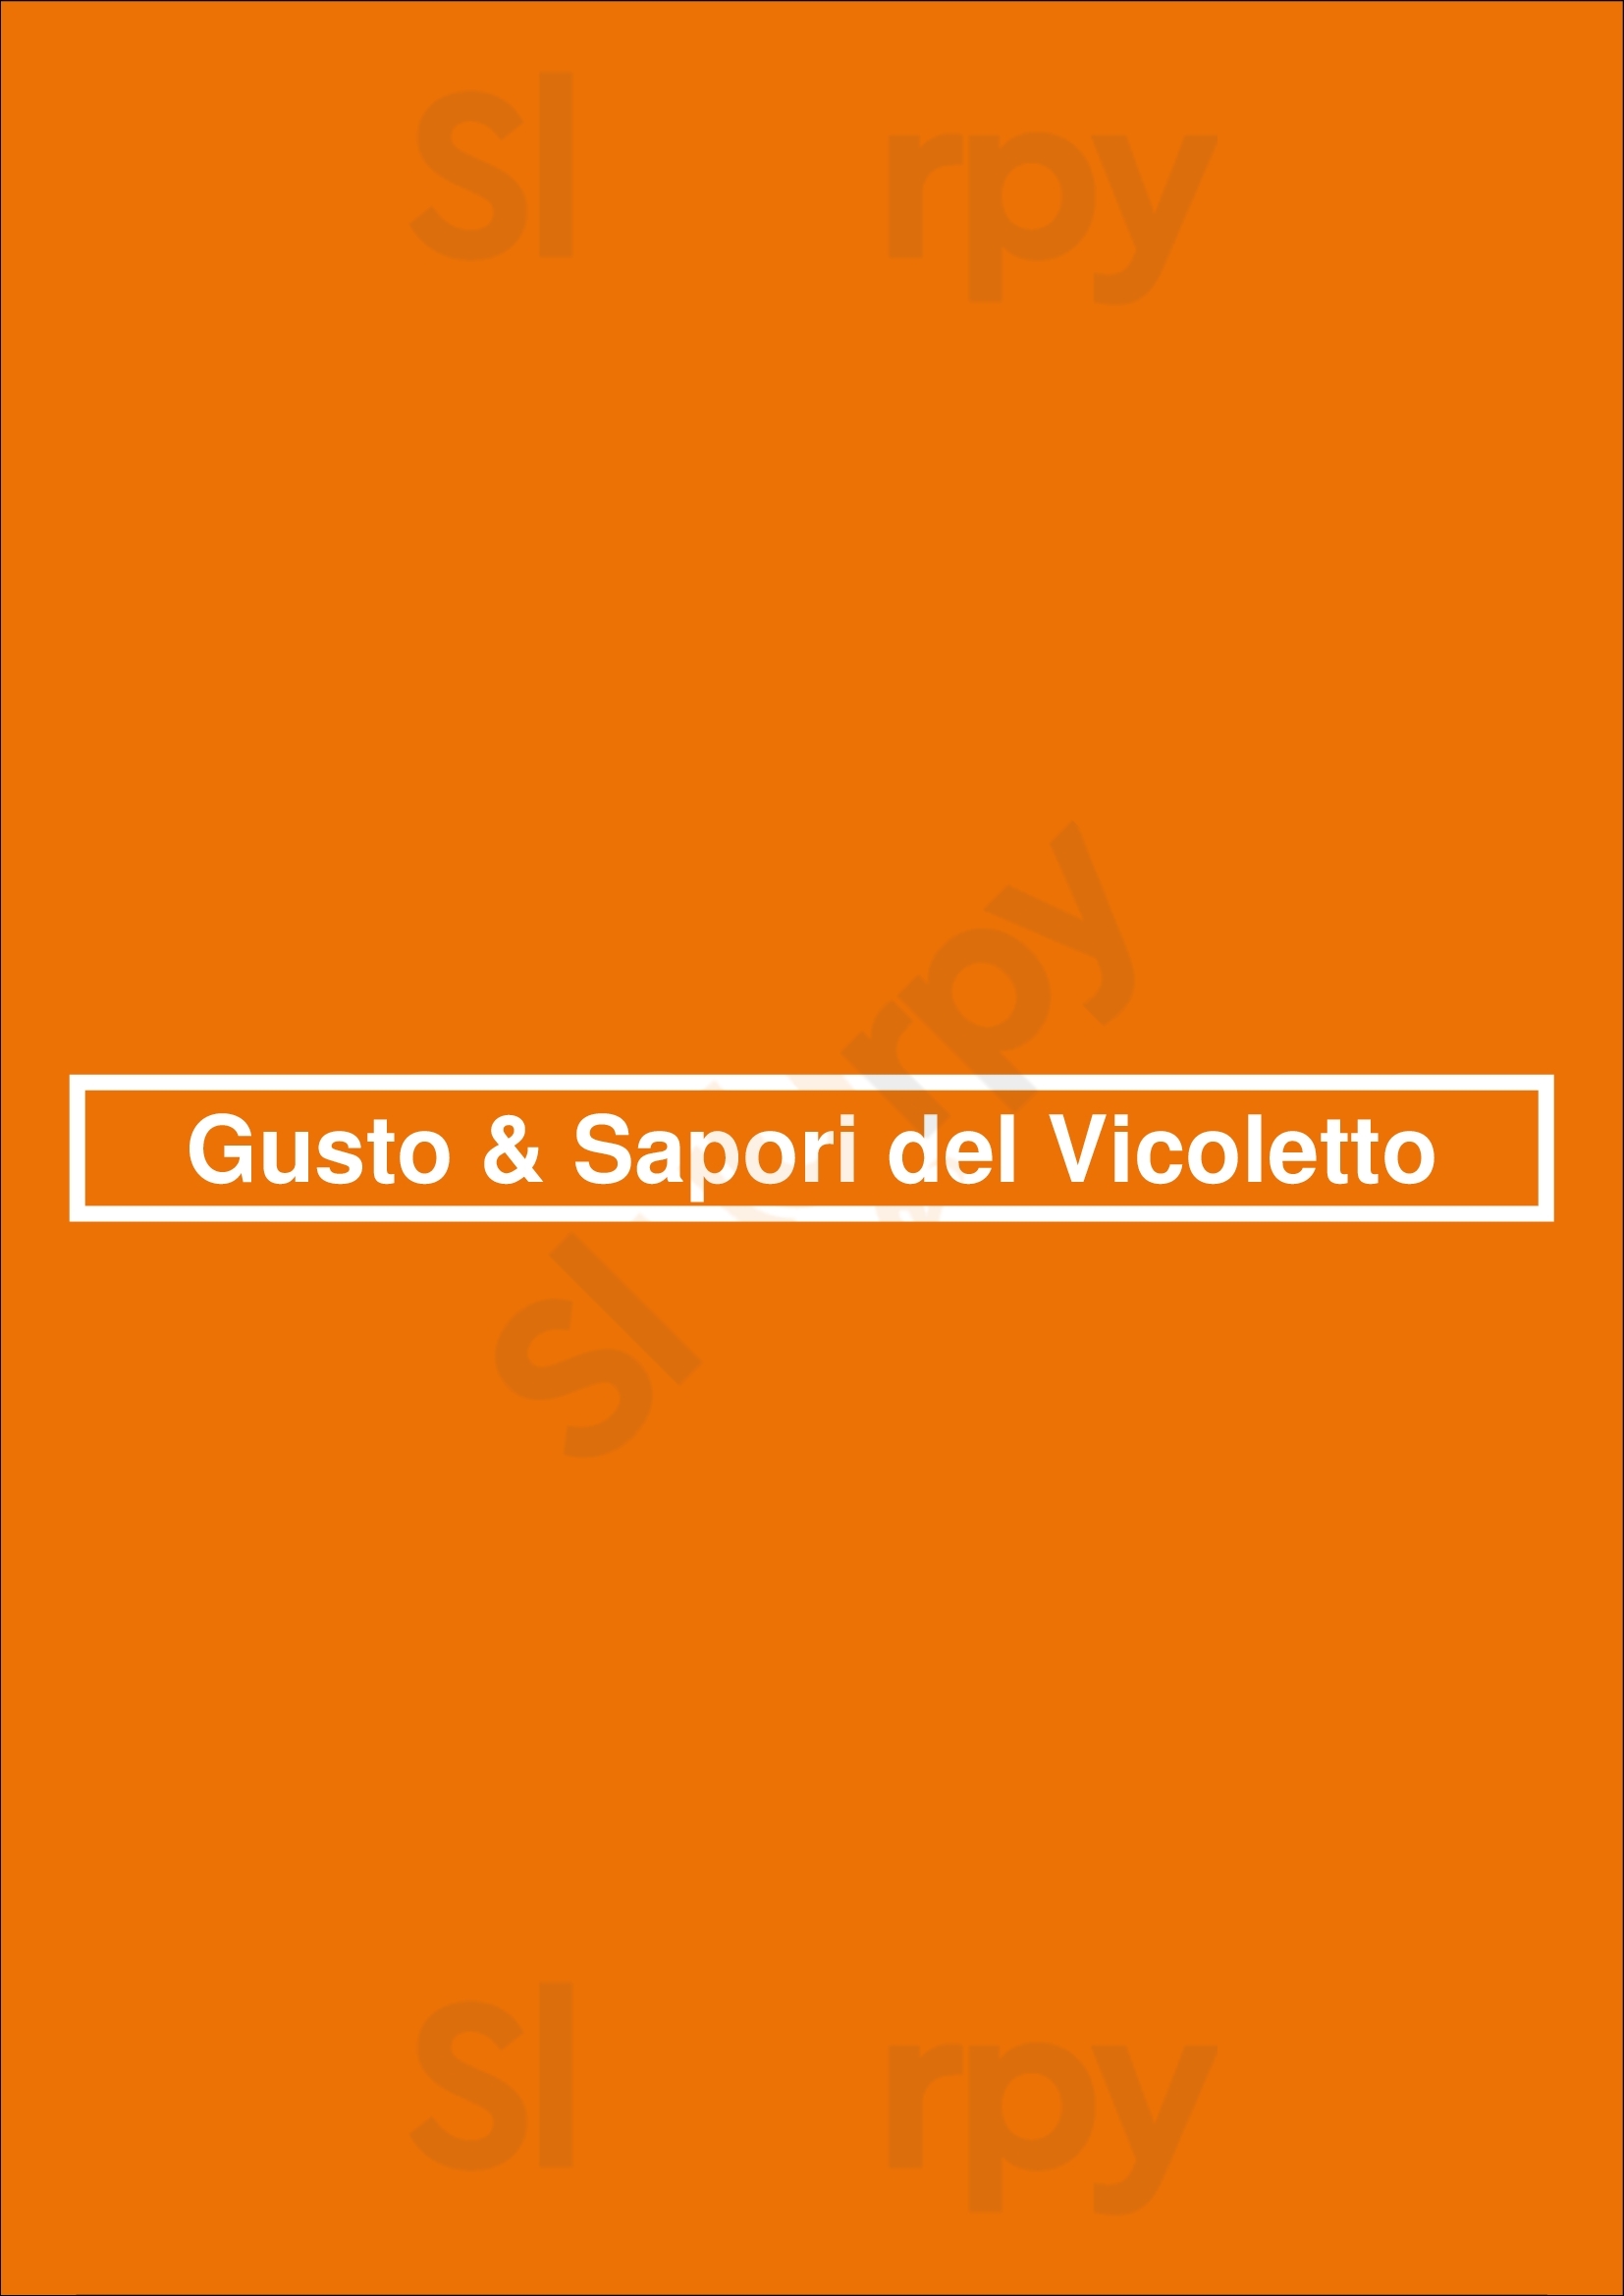 Gusto & Sapori Del Vicoletto Menton Menu - 1